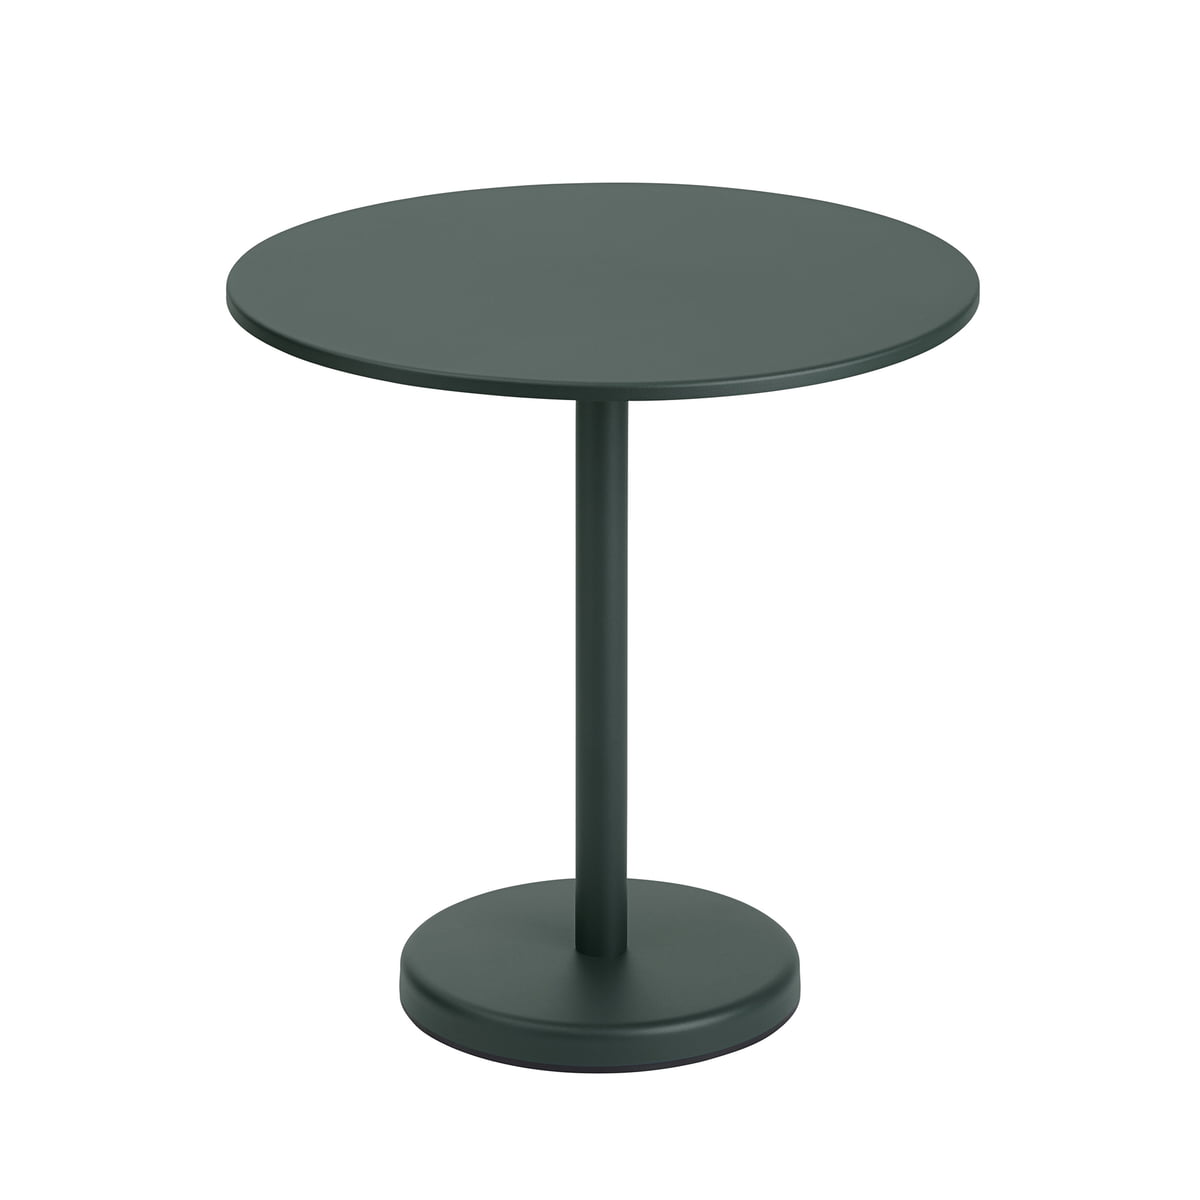 Muuto - Linear Steel Tisch, rund, Ø 70 cm, dunkelgrün